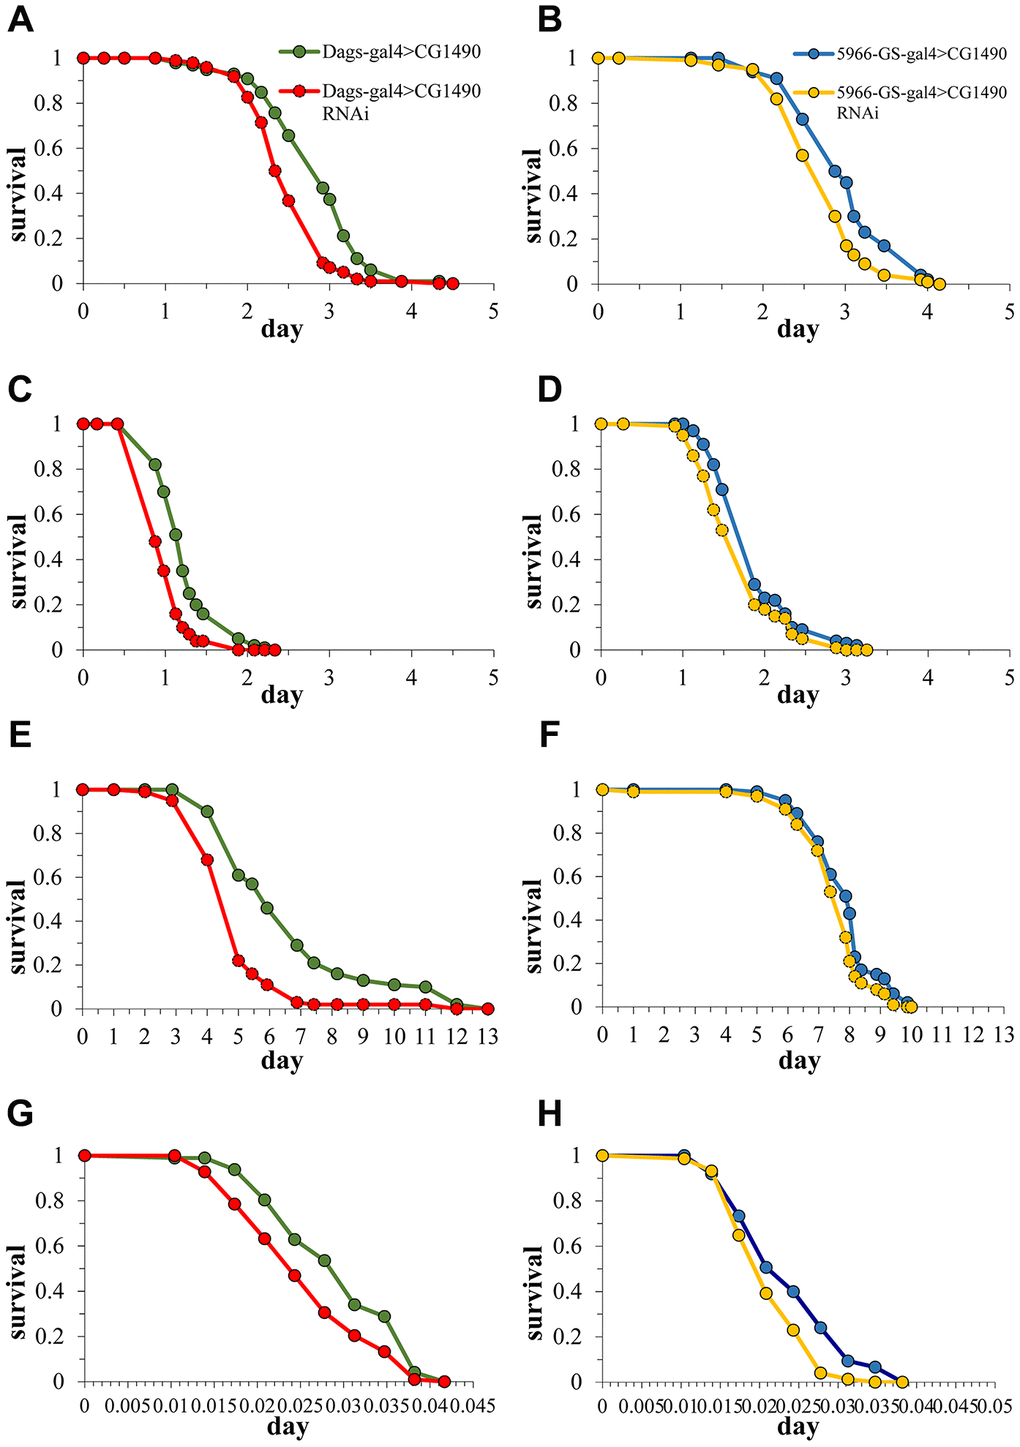 Effect of dusp7 knockdown on Drosophila stress tolerance. (A) Effect of dusp7 knockdown on Drosophila tolerance to H2O2. (B) Effect of gut-specific dusp7 knockdown on Drosophila tolerance to H2O2. (C) Effect of dusp7 knockdown on Drosophila tolerance to paraquat. (D) Effect of gut-specific dusp7 knockdown on Drosophila tolerance to paraquat. (E) Effect of dusp7 knockdown on Drosophila tolerance to starvation. (F) Effect of gut-specific dusp7 knockdown on Drosophila tolerance to starvation. (G) Effect of dusp7 knockdown on Drosophila tolerance to heat stimulation. (H) Effect of dusp7 gut-specific knockdown on Drosophila tolerance to heat stimulation. (>: hybridization).